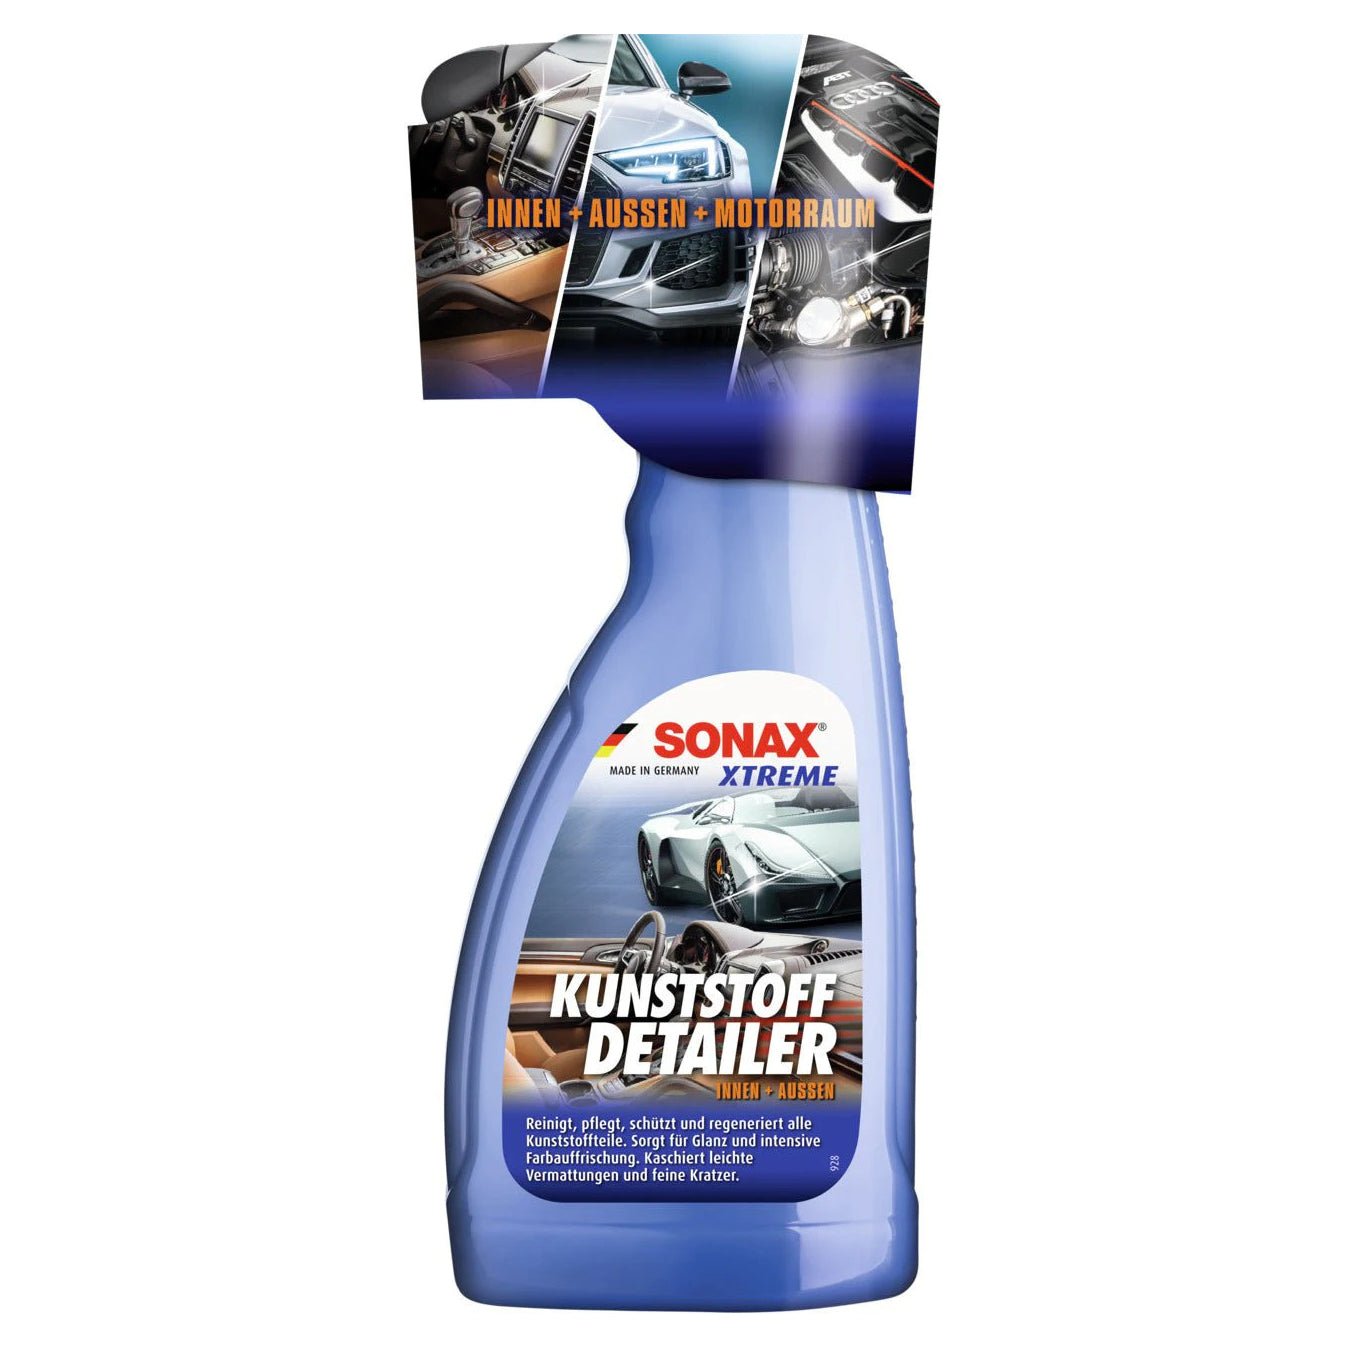 Sonax Xtreme Kunststoff Detailer Innen+Außen - Shop4Tesla